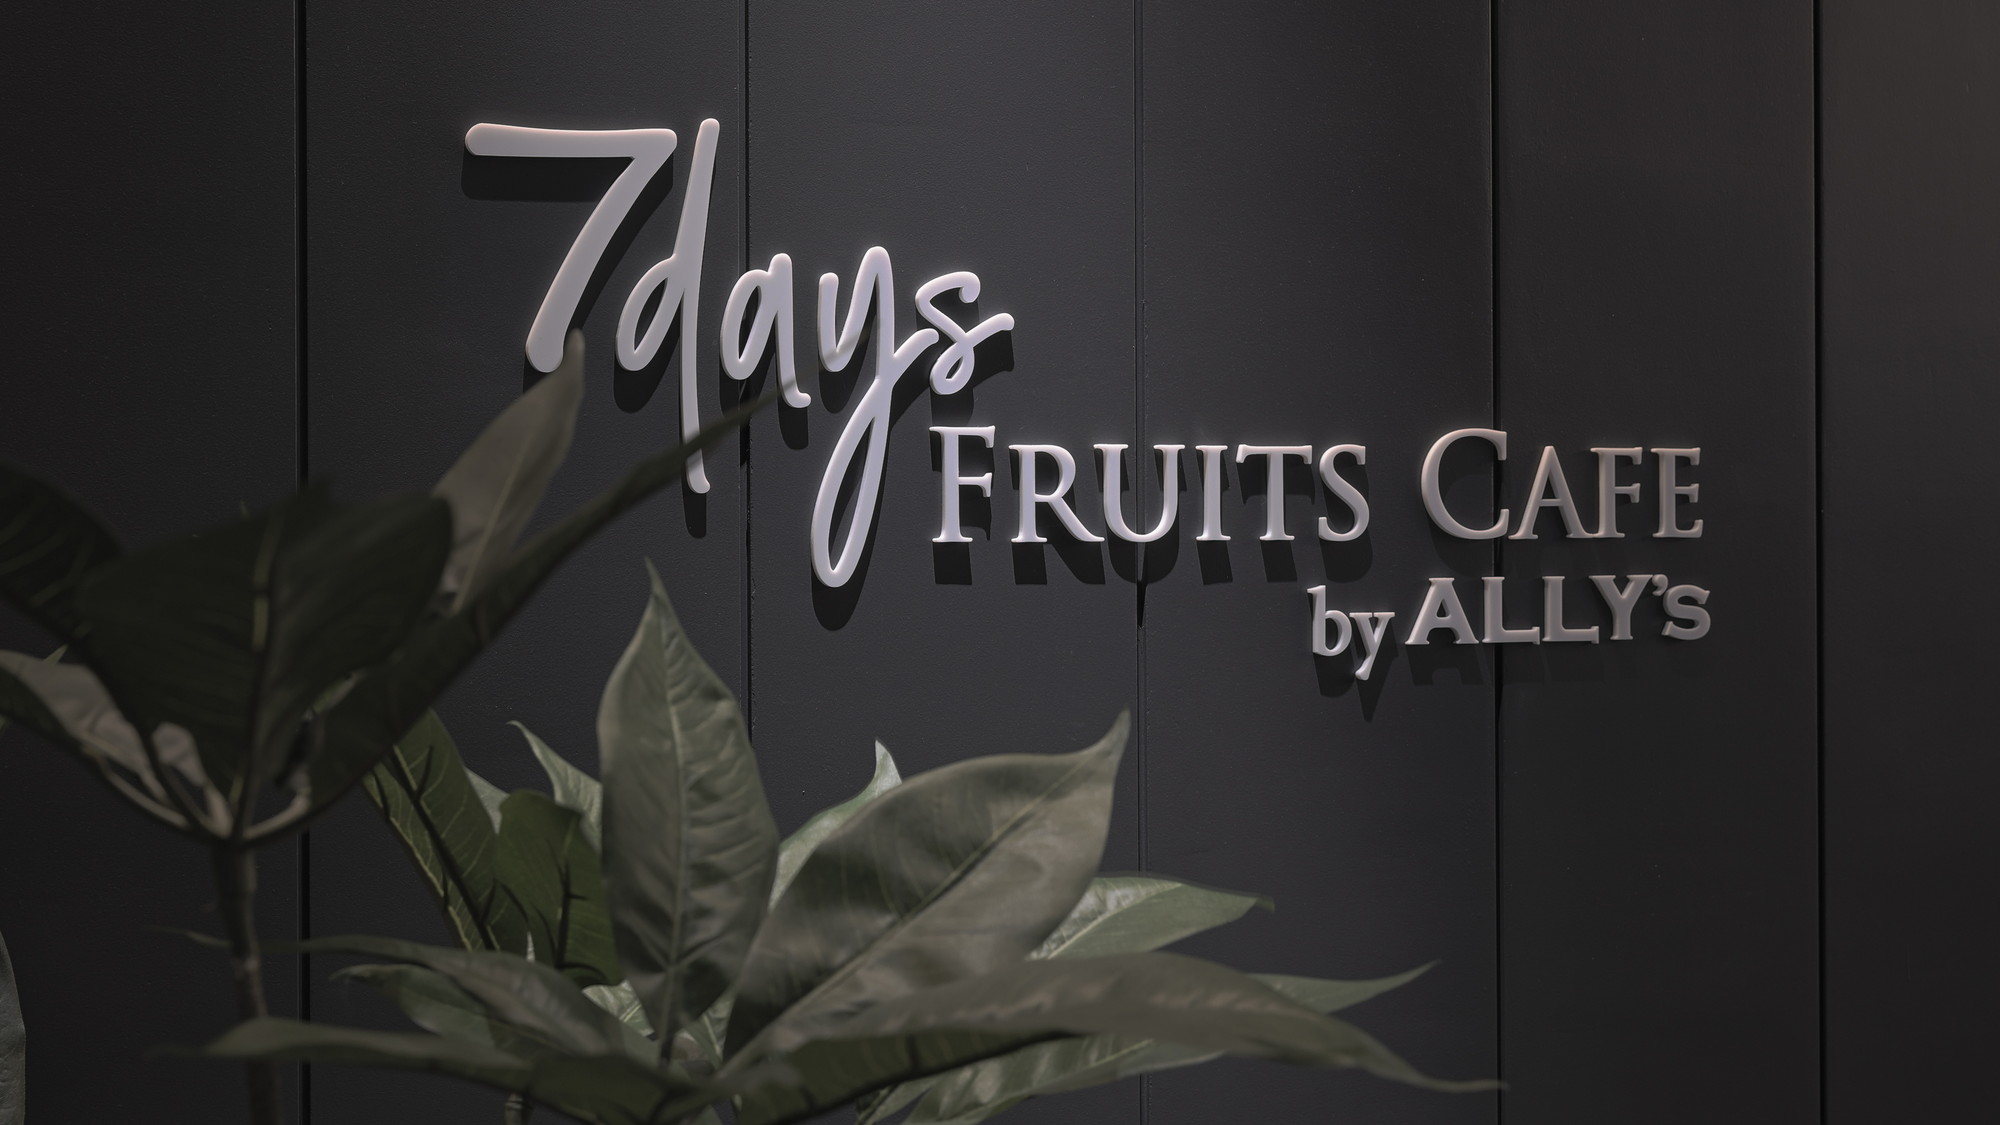 7Days FRUITS CAFÉ by ALLY's